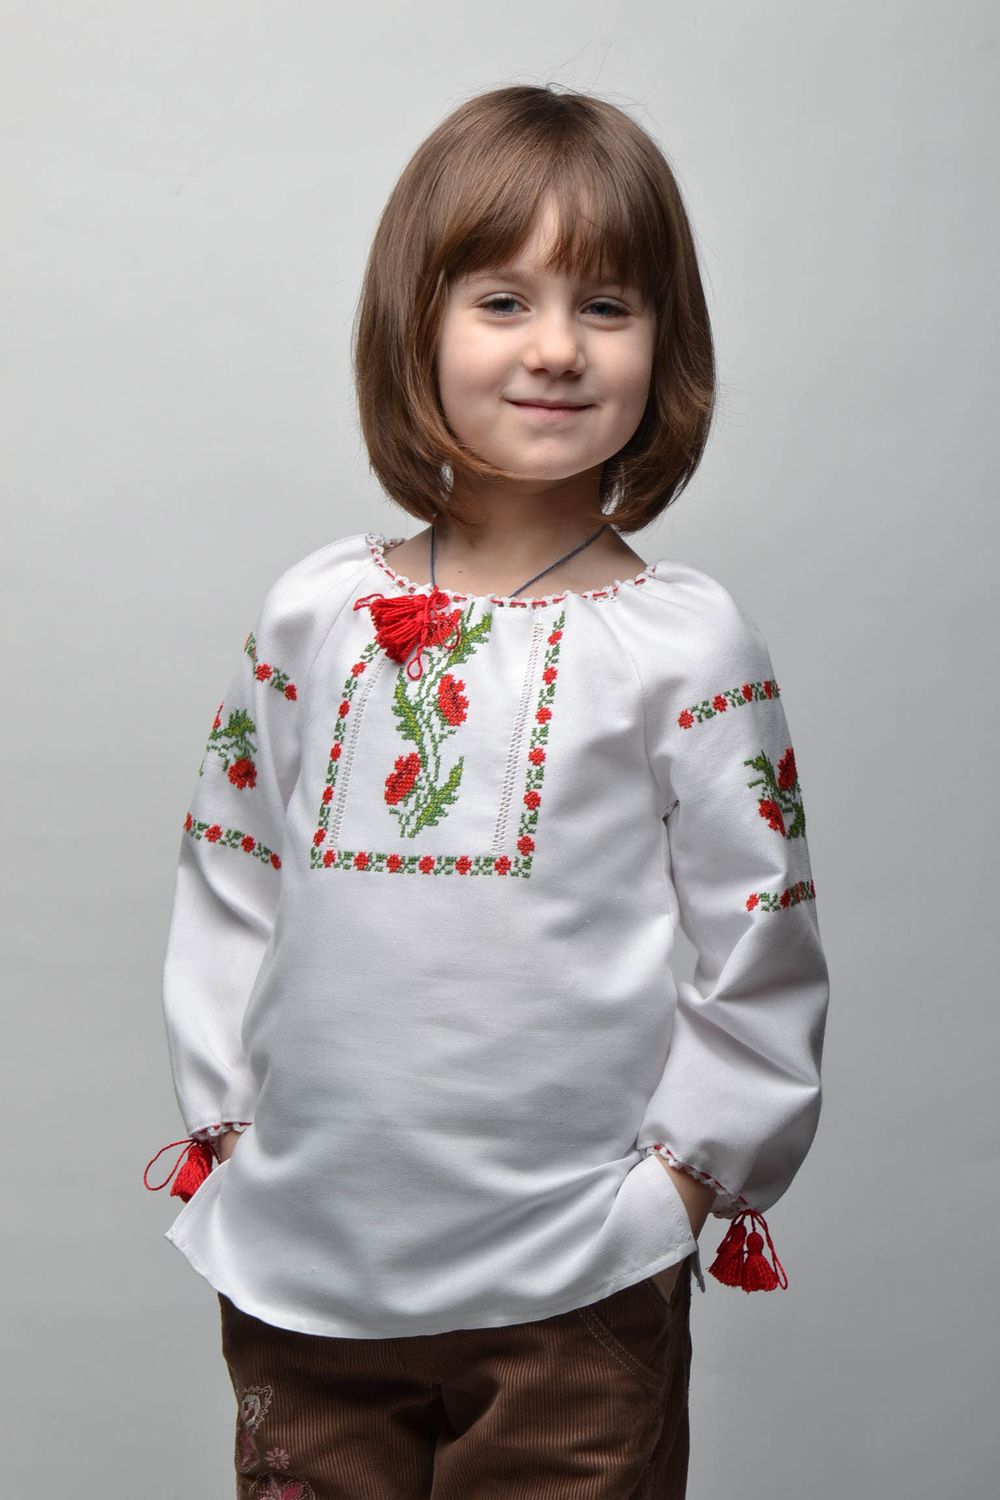 Camisa bordada para una niña de 5-7 años foto 1